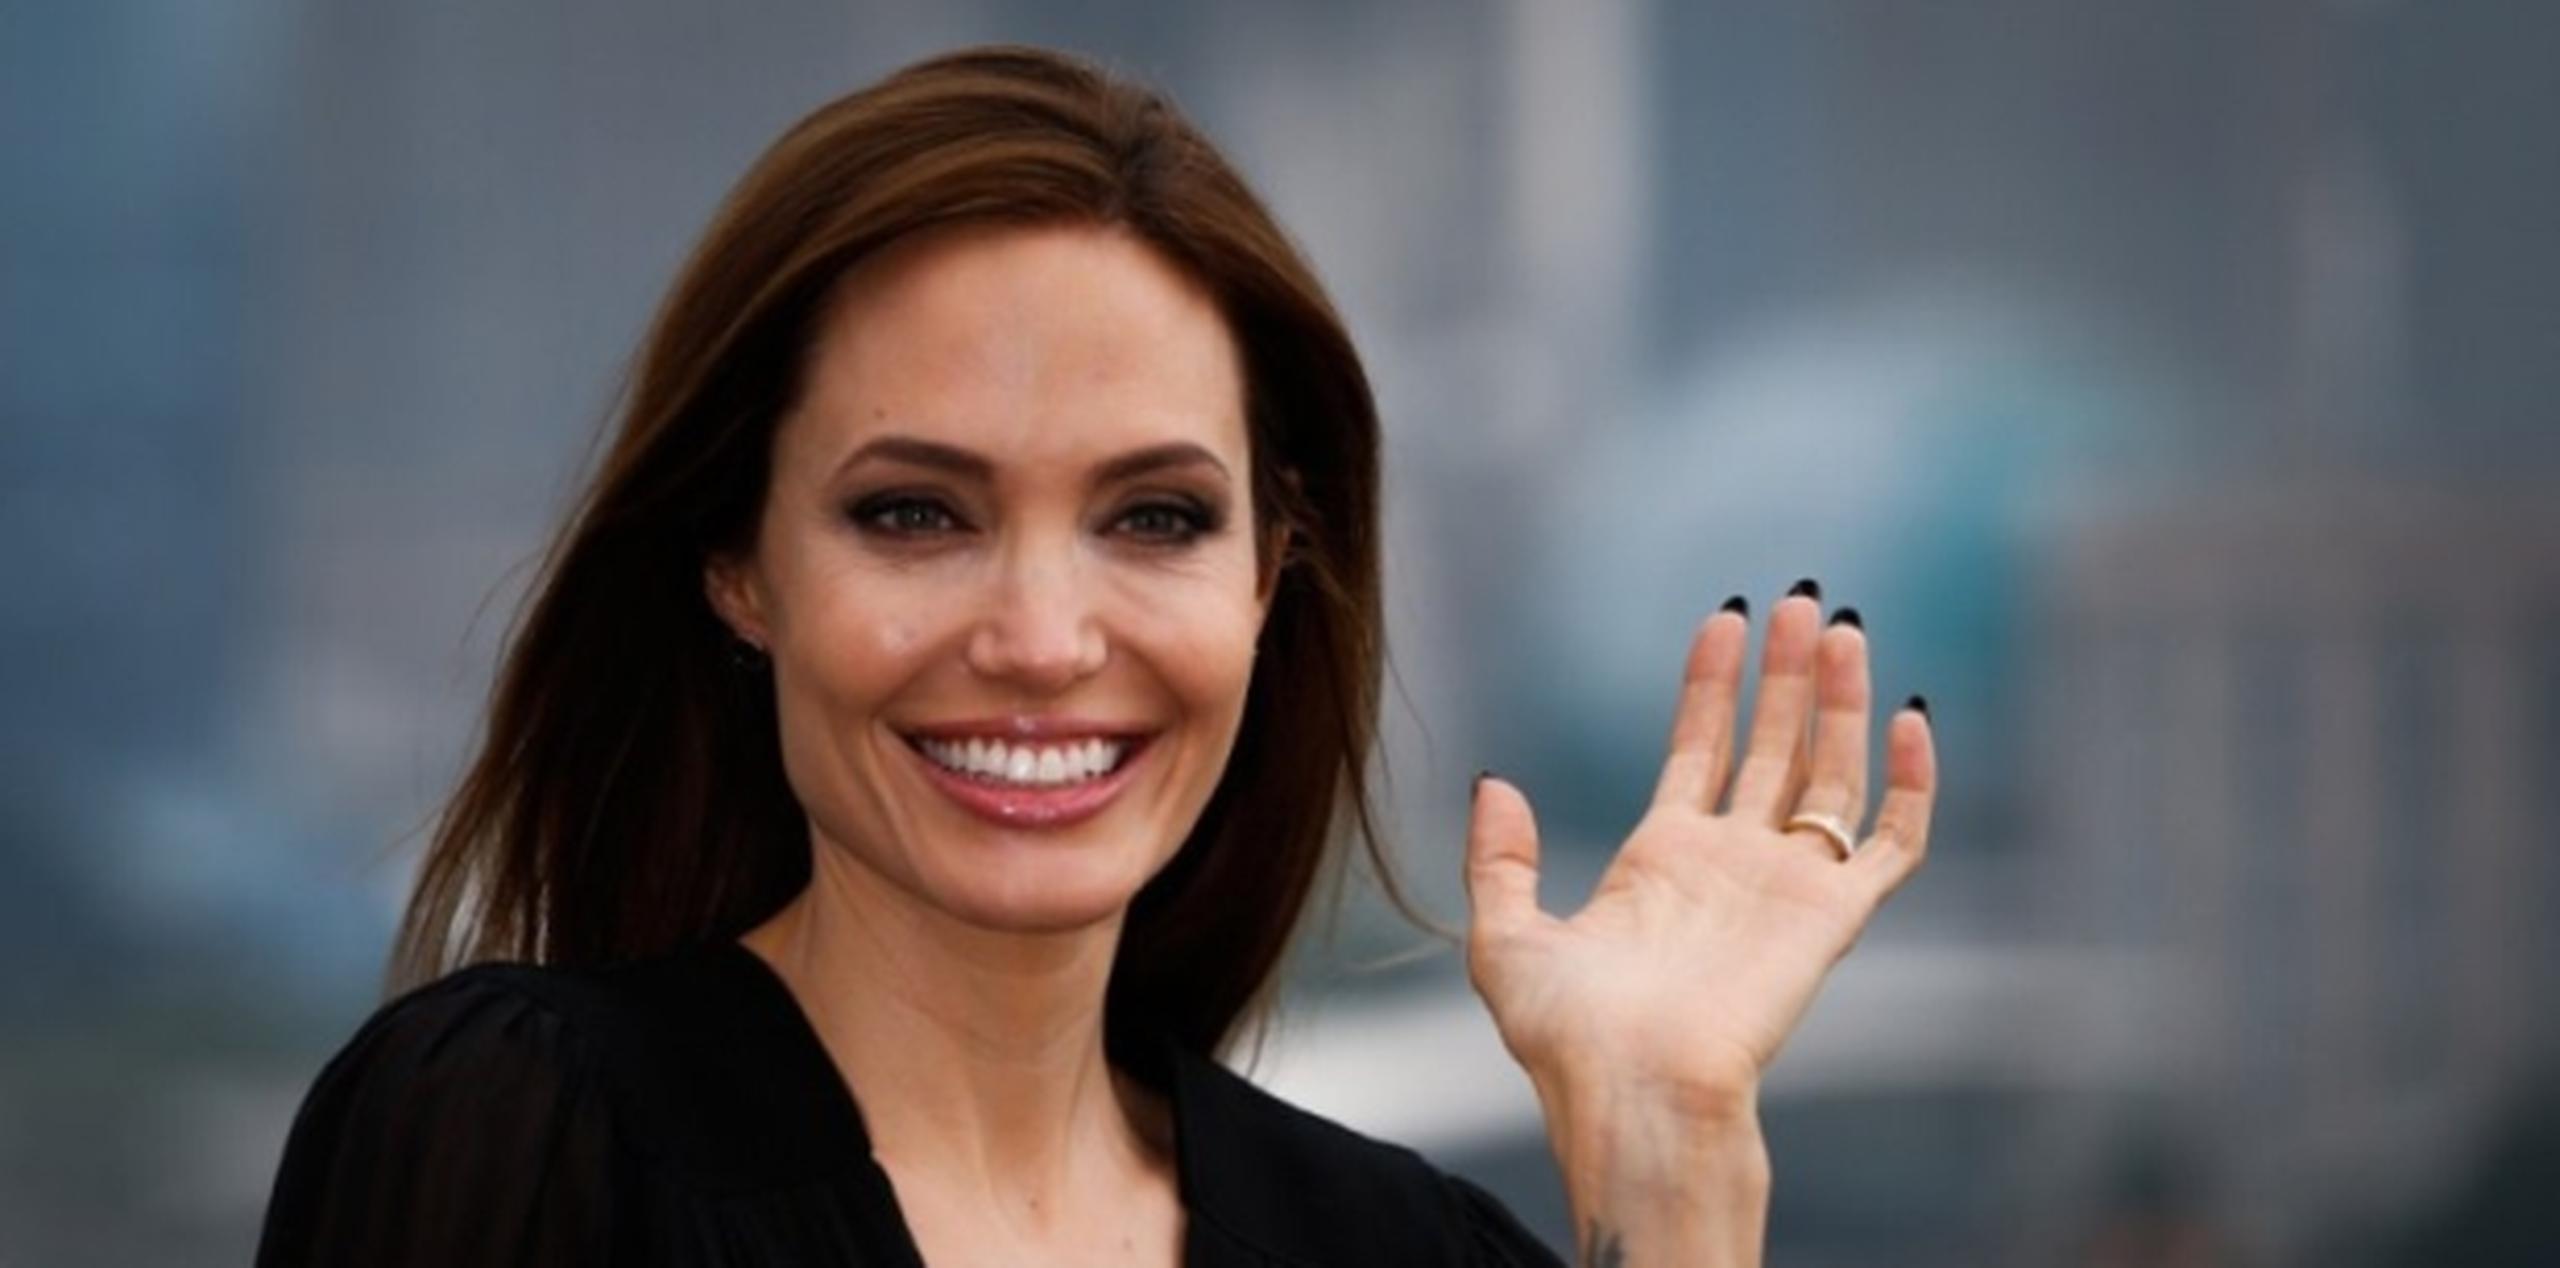 Jolie estrenará este año, como realizadora, el filme "Unbroken", otra adaptación biográfica, en este caso sobre el atleta olímpico y soldado en la Segunda Guerra Mundial, Louis Zamperin. (AP)